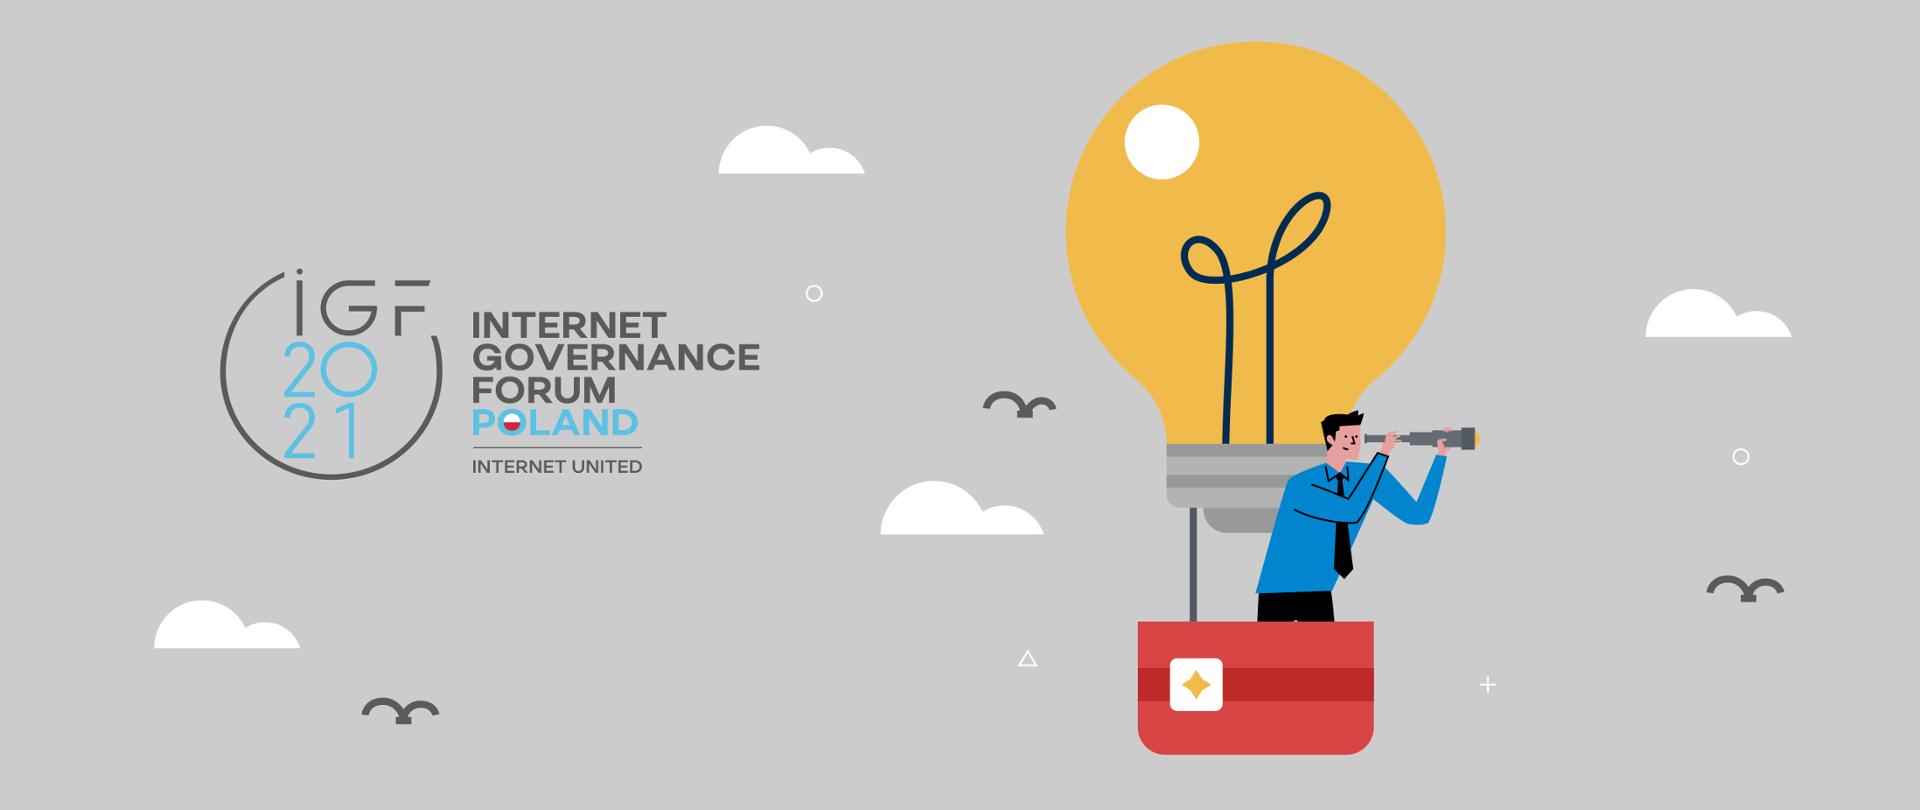 Grafika przedstawia rysunek balonu z koszem na tle chmur i ptaków. W koszu świat obserwuje pilot z lunetą w ręku. Na grafice znajduje się logotyp IGF 2021 z napisem Internet Governance Forum "Internet United". 